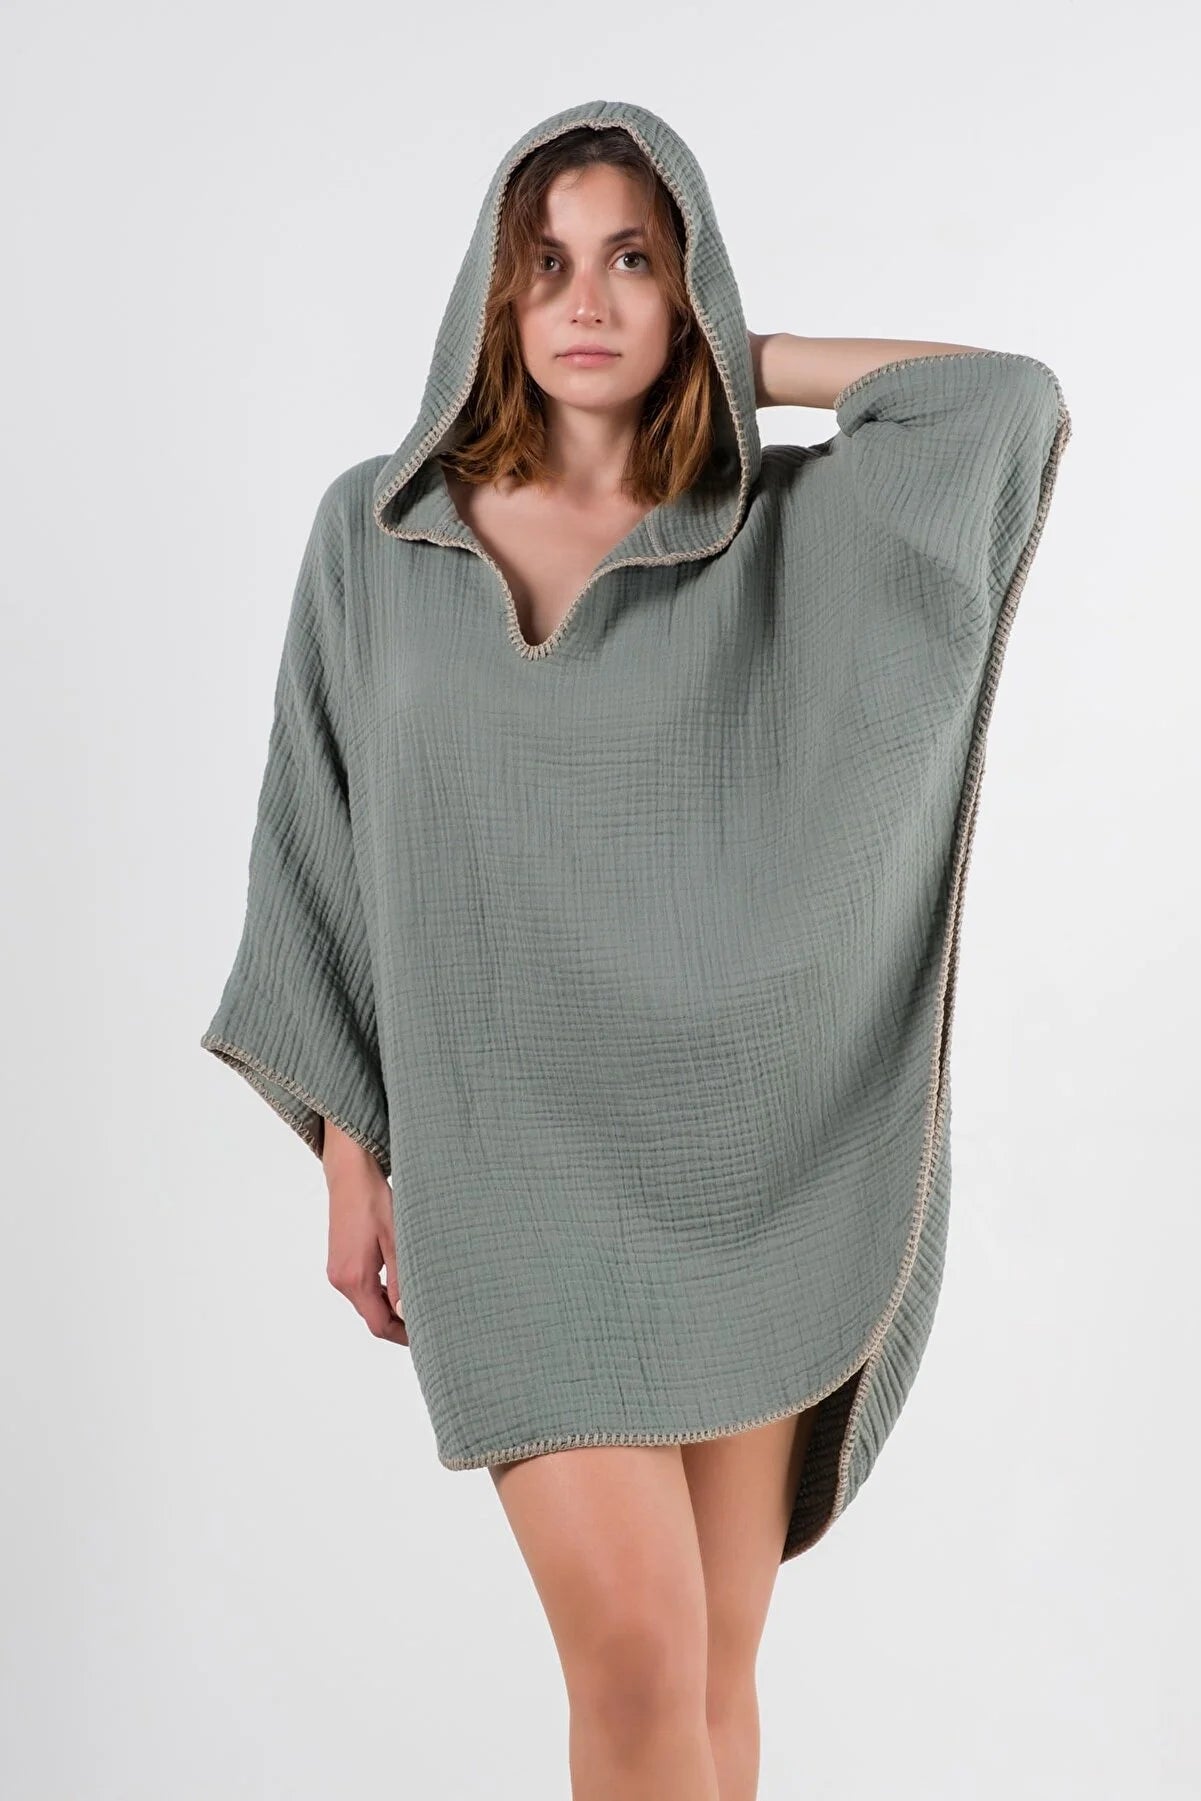 TEEK - Babe Hooded Beach Poncho DRESS TEEK M Green  